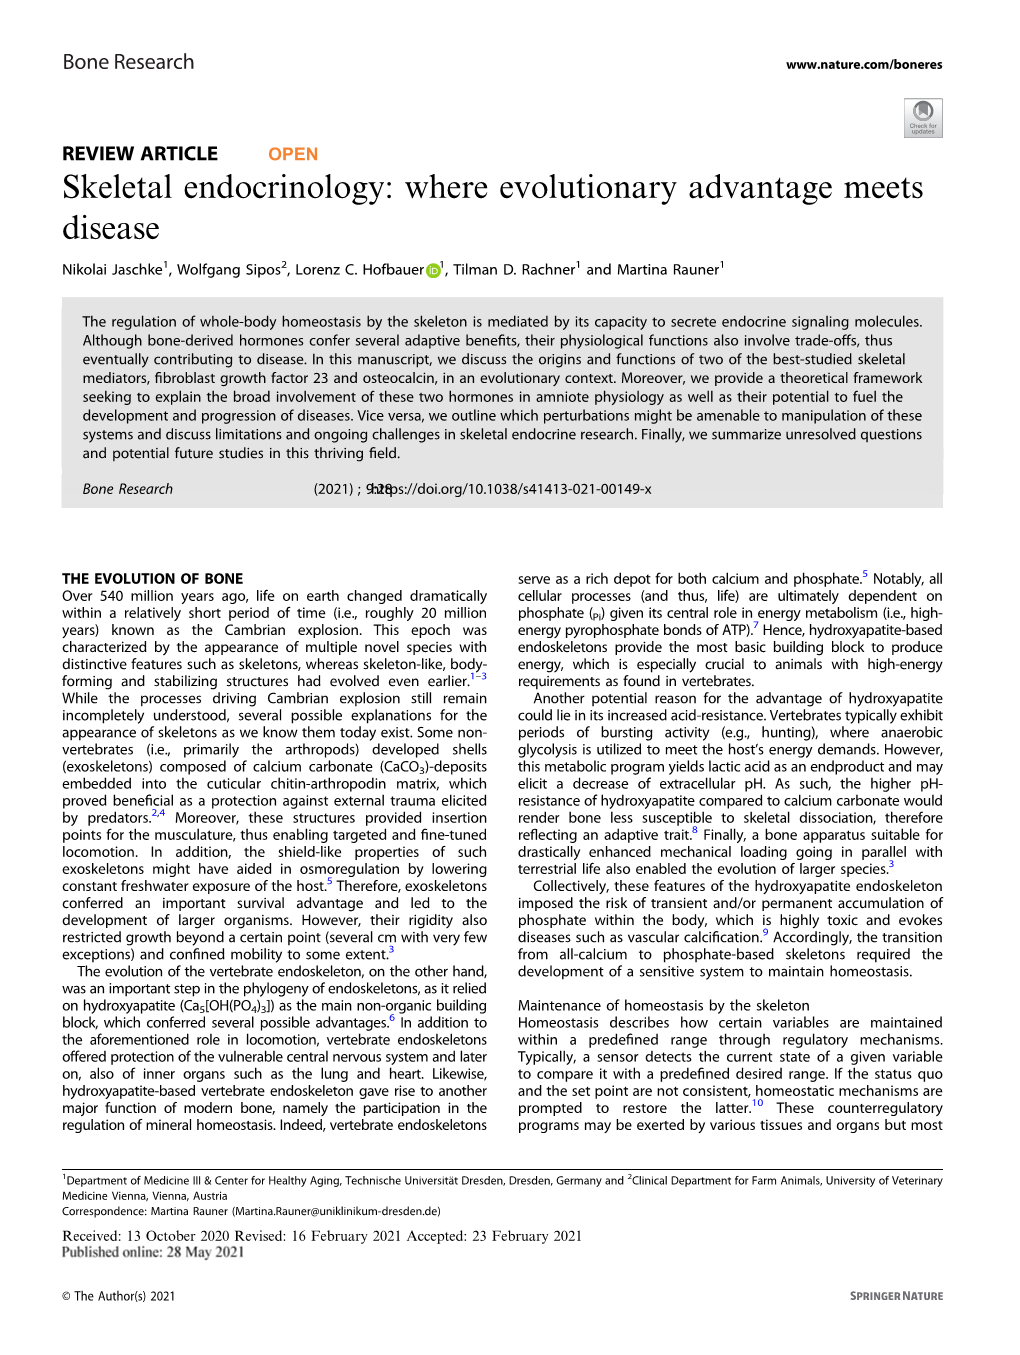 Skeletal Endocrinology: Where Evolutionary Advantage Meets Disease